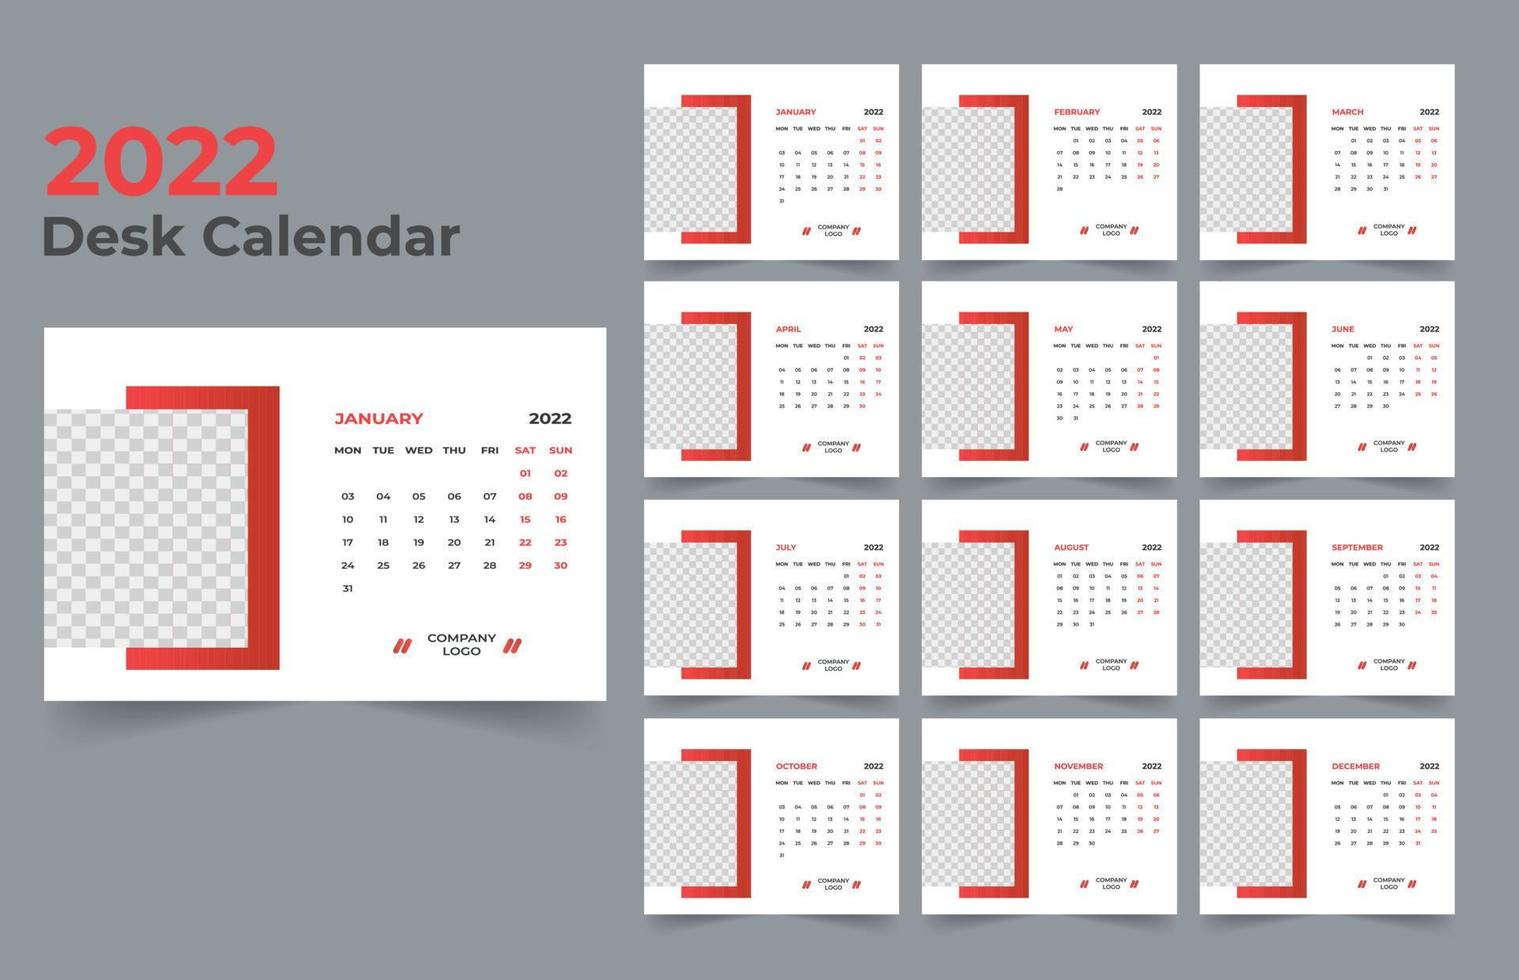 diseño de calendario de escritorio 2022 vector